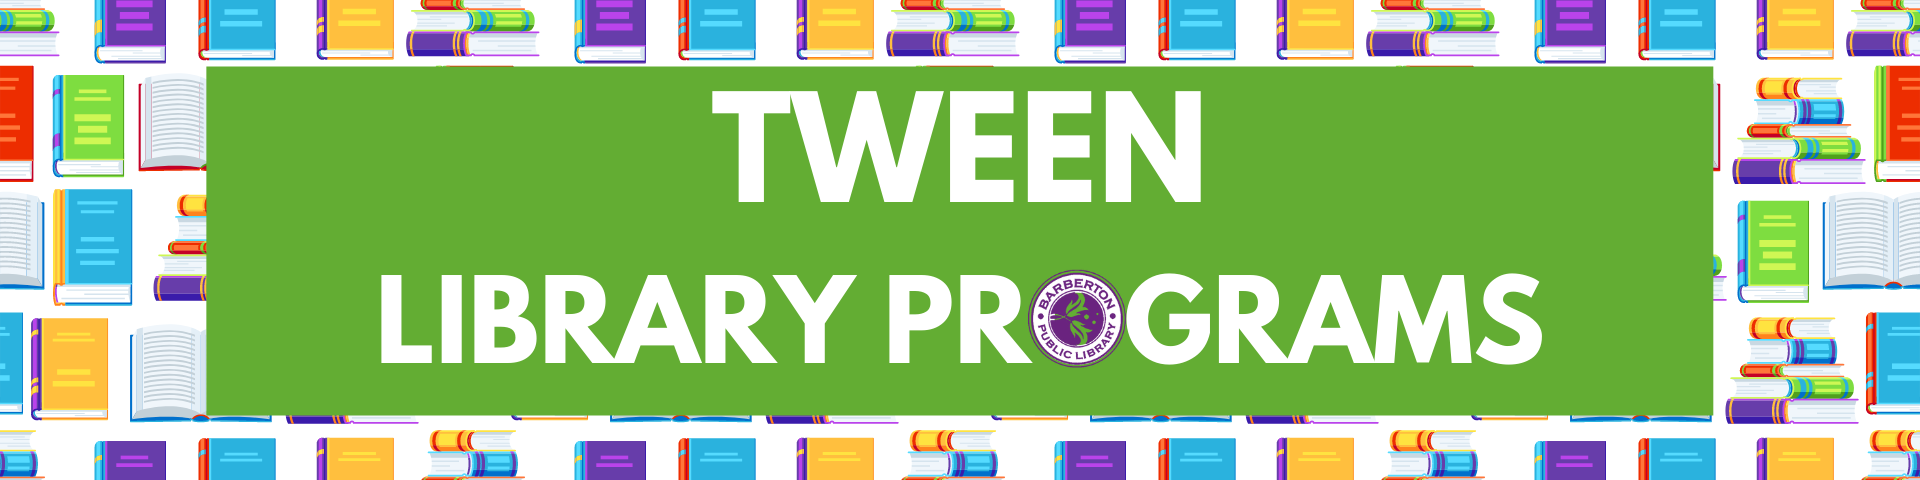 Tween Library Programs